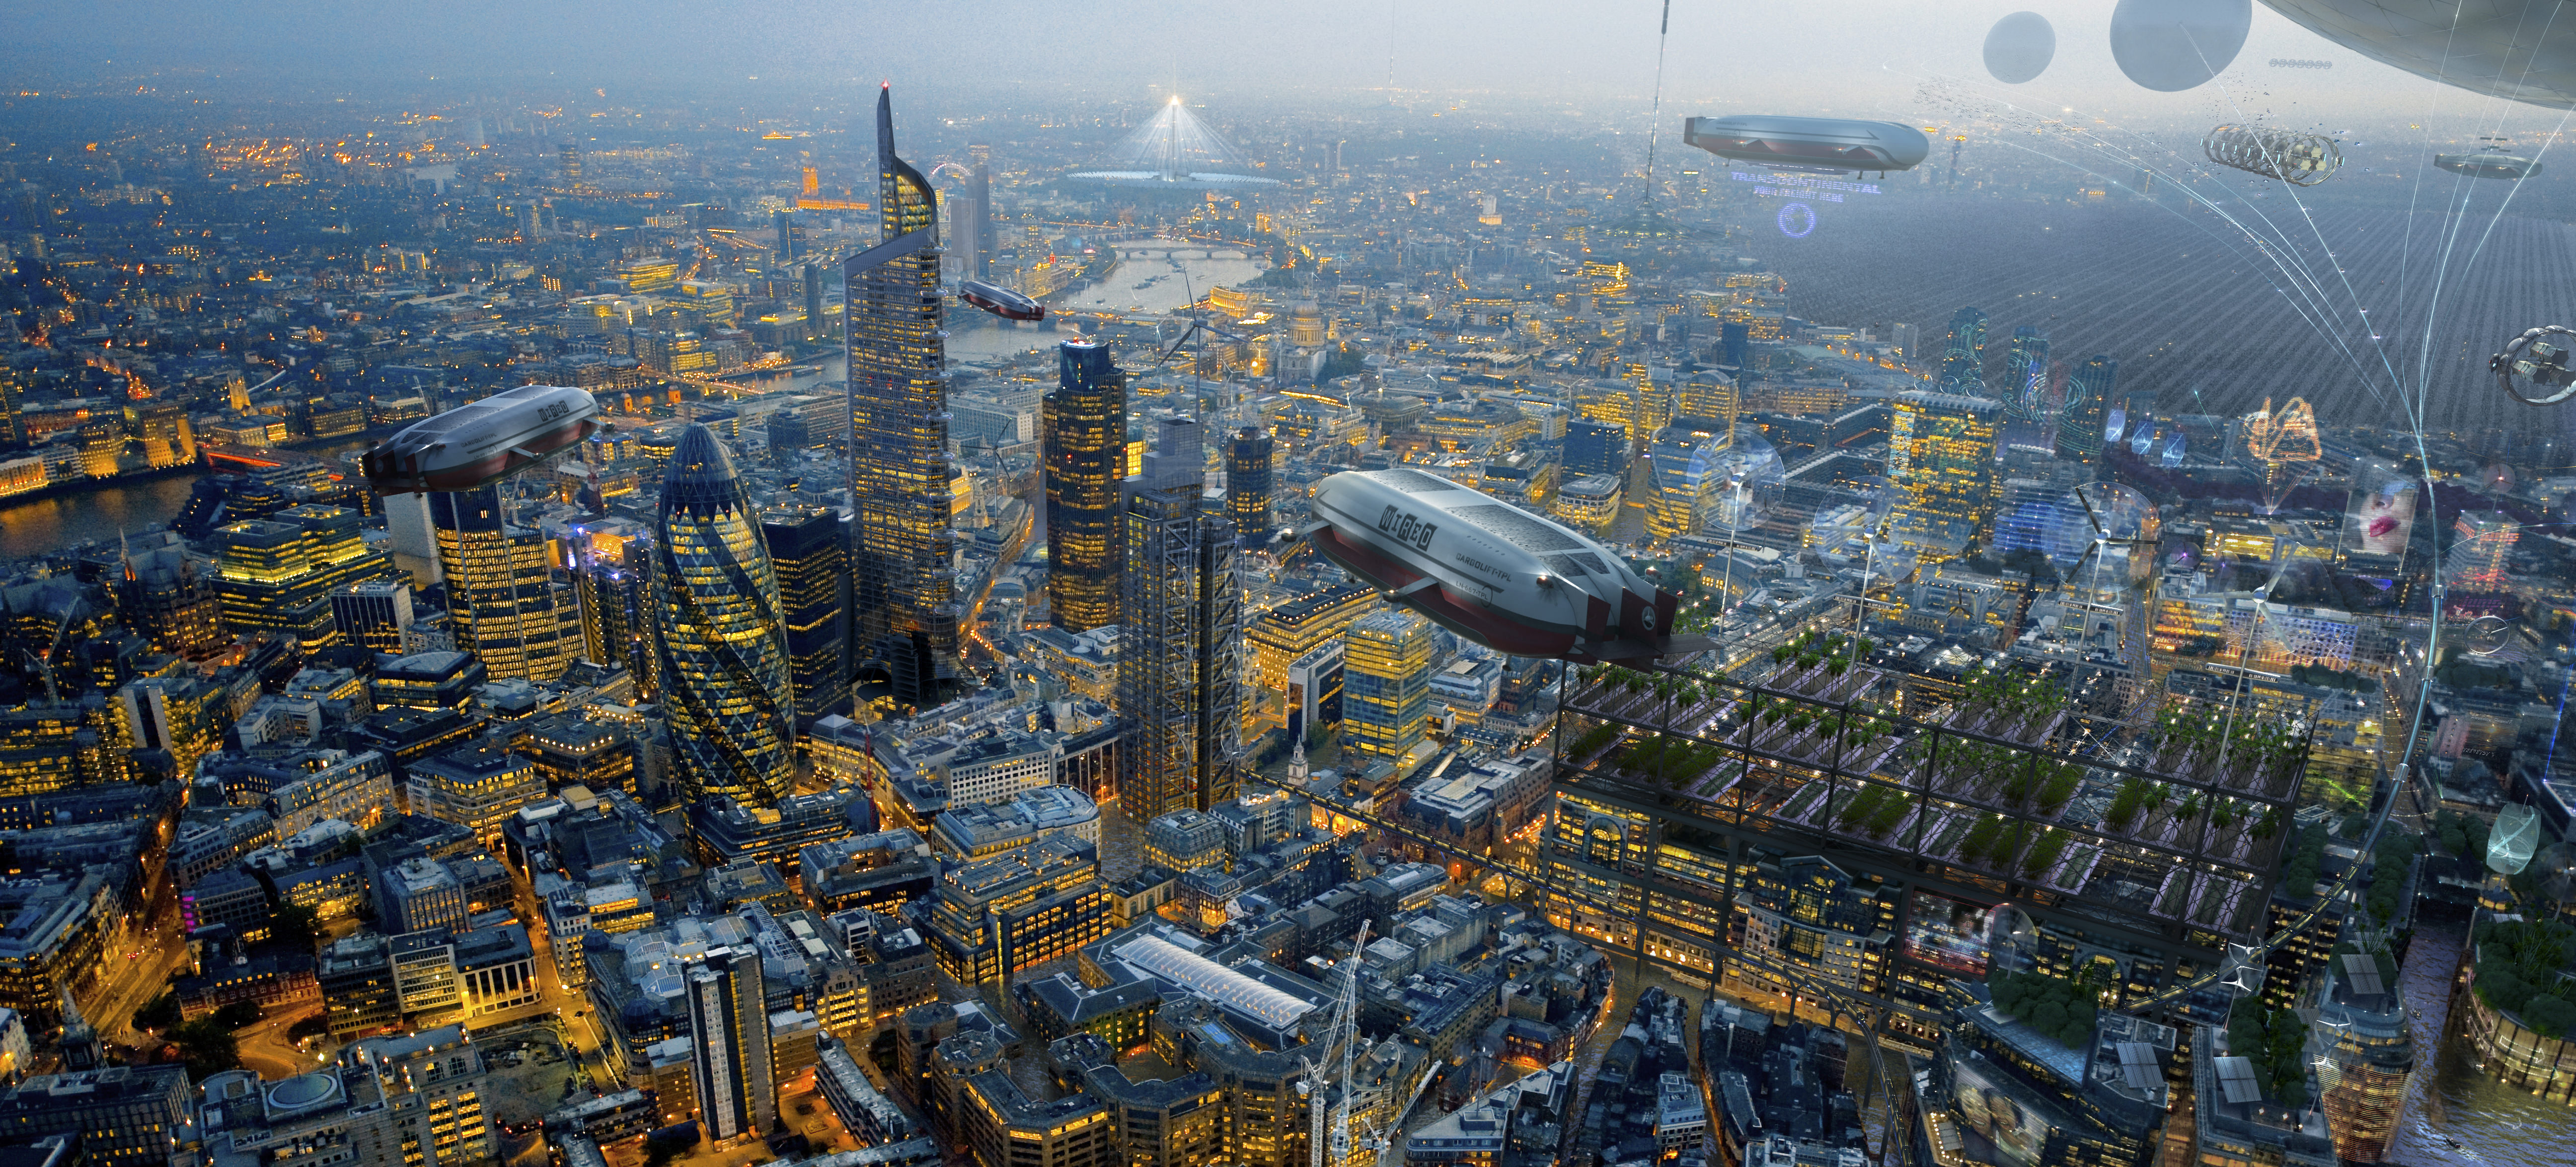 2017 что будет в мире. Город будущего 2050. Будущее земли. Лондон 2100 год. Мир в 2100 году.